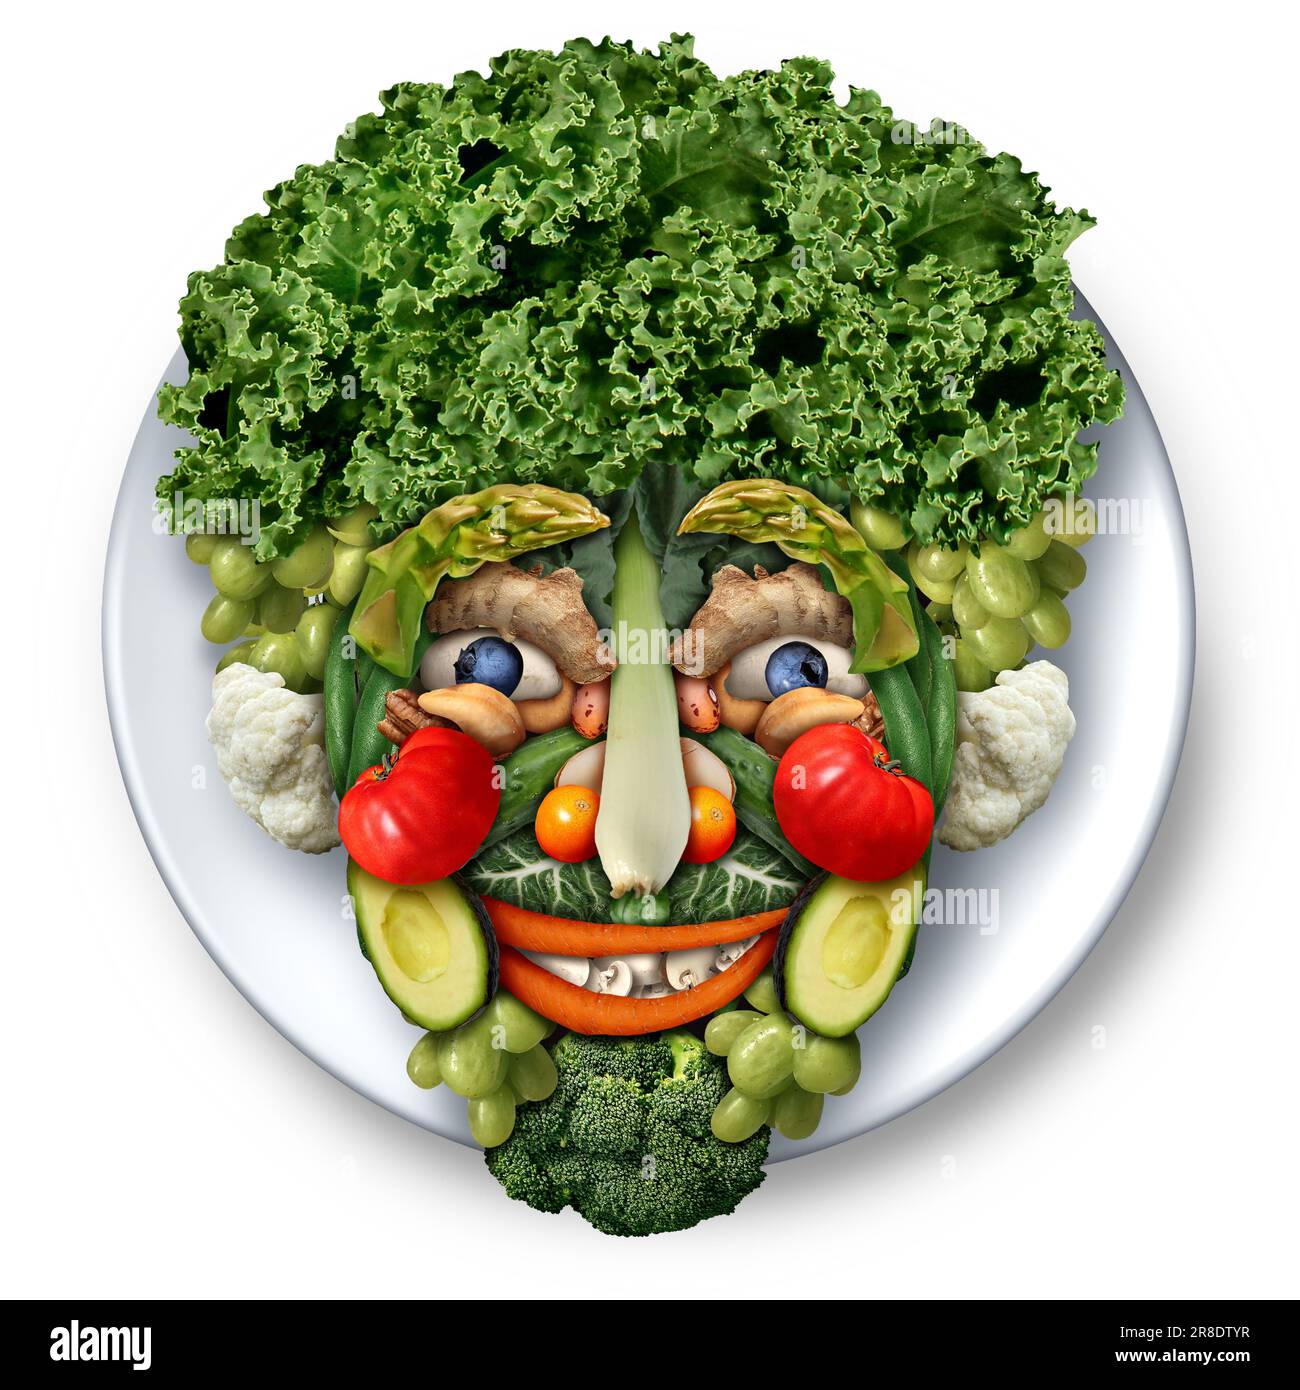 Food Sculpture Head als vegane oder vegetarische essbare Kunst oder kreative Essensskulpturen in Form eines Gesichts. Stockfoto